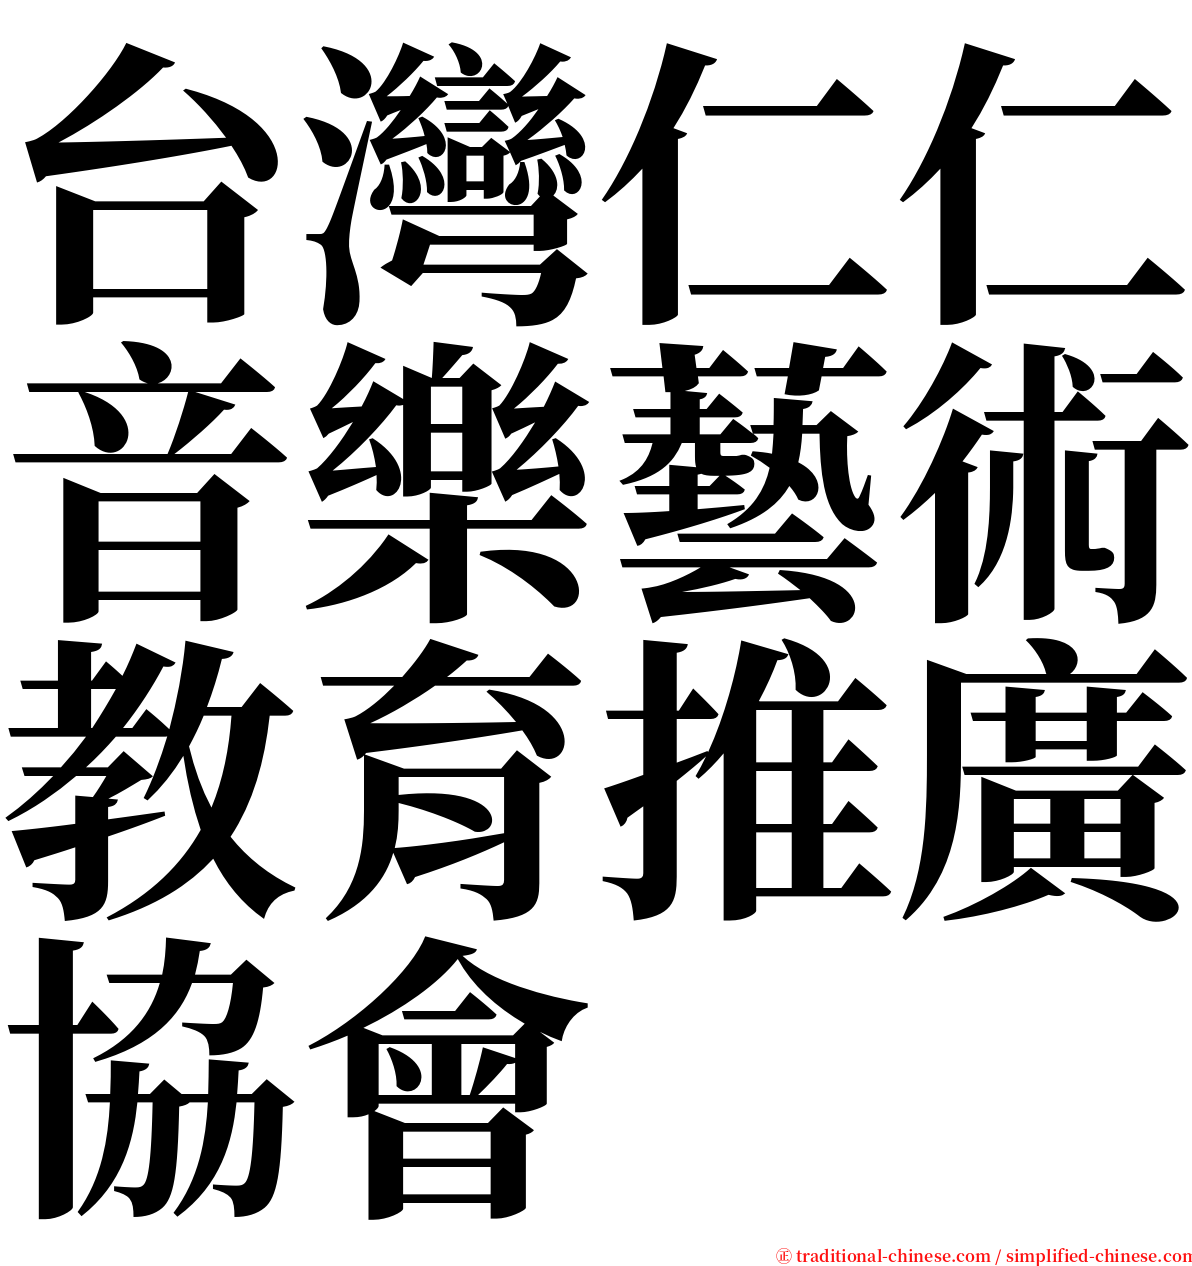 台灣仁仁音樂藝術教育推廣協會 serif font